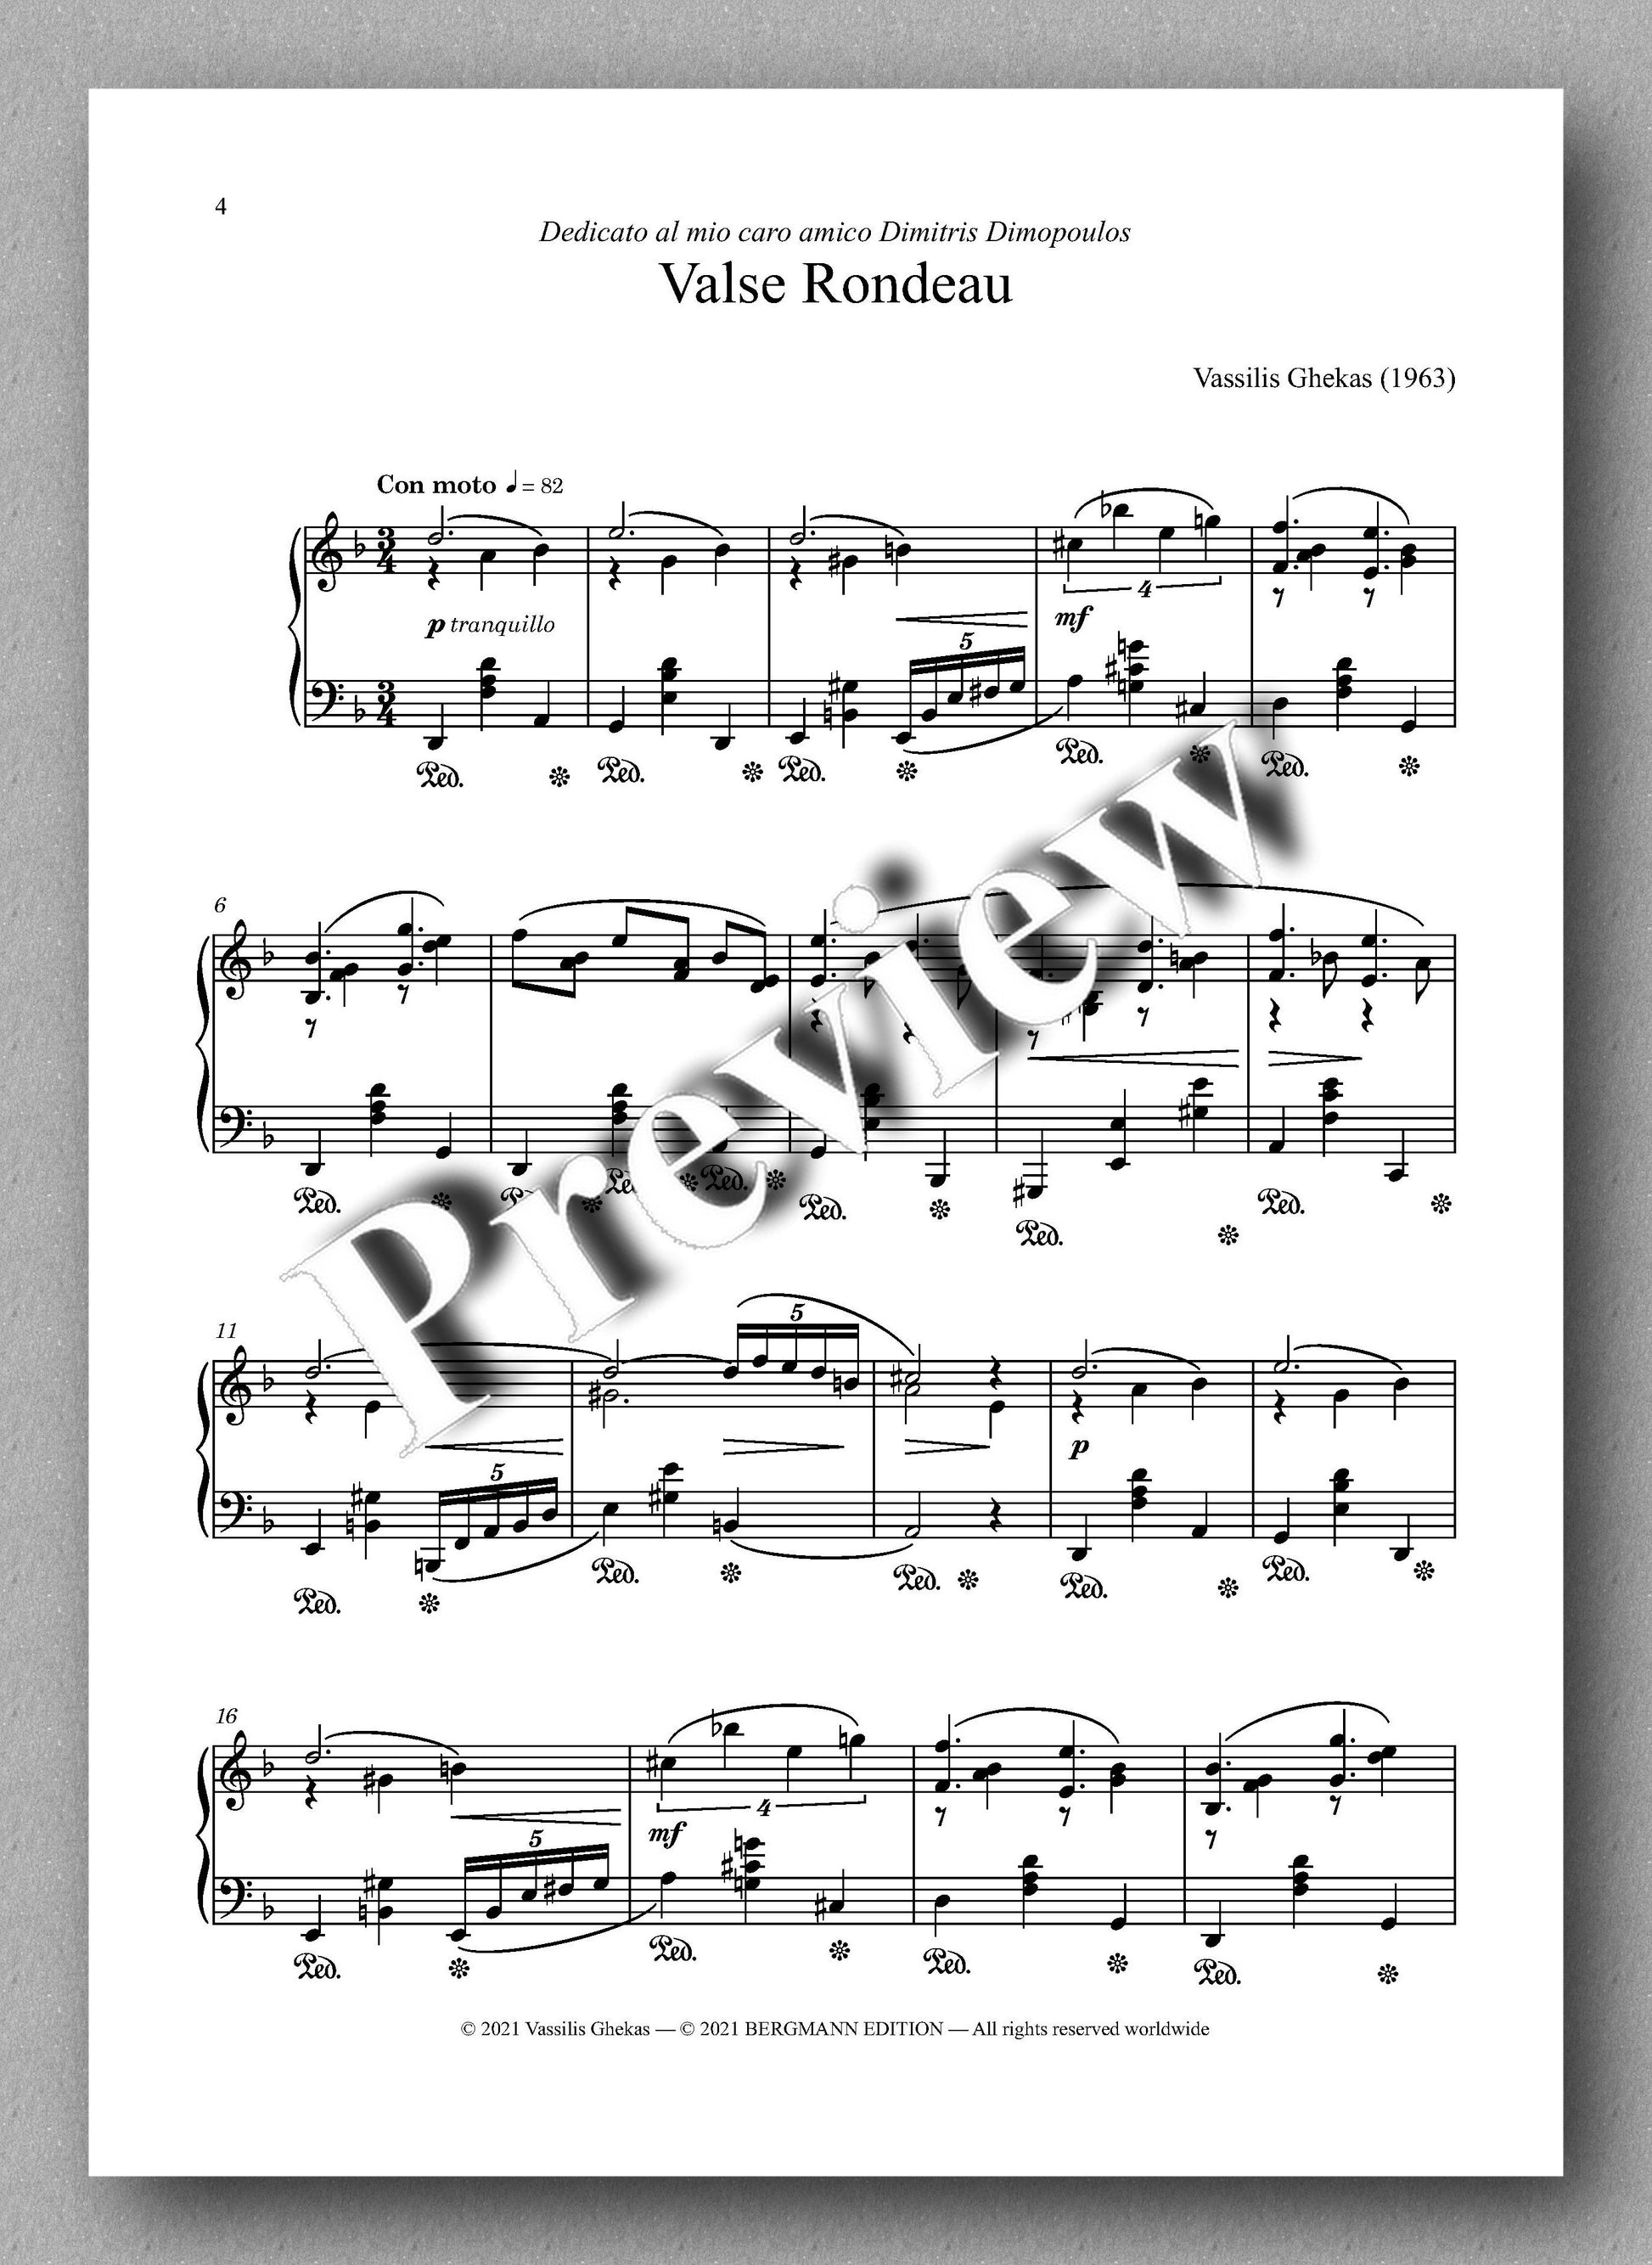 Valse Rondeau by Vassilis Ghekas - Music score 1